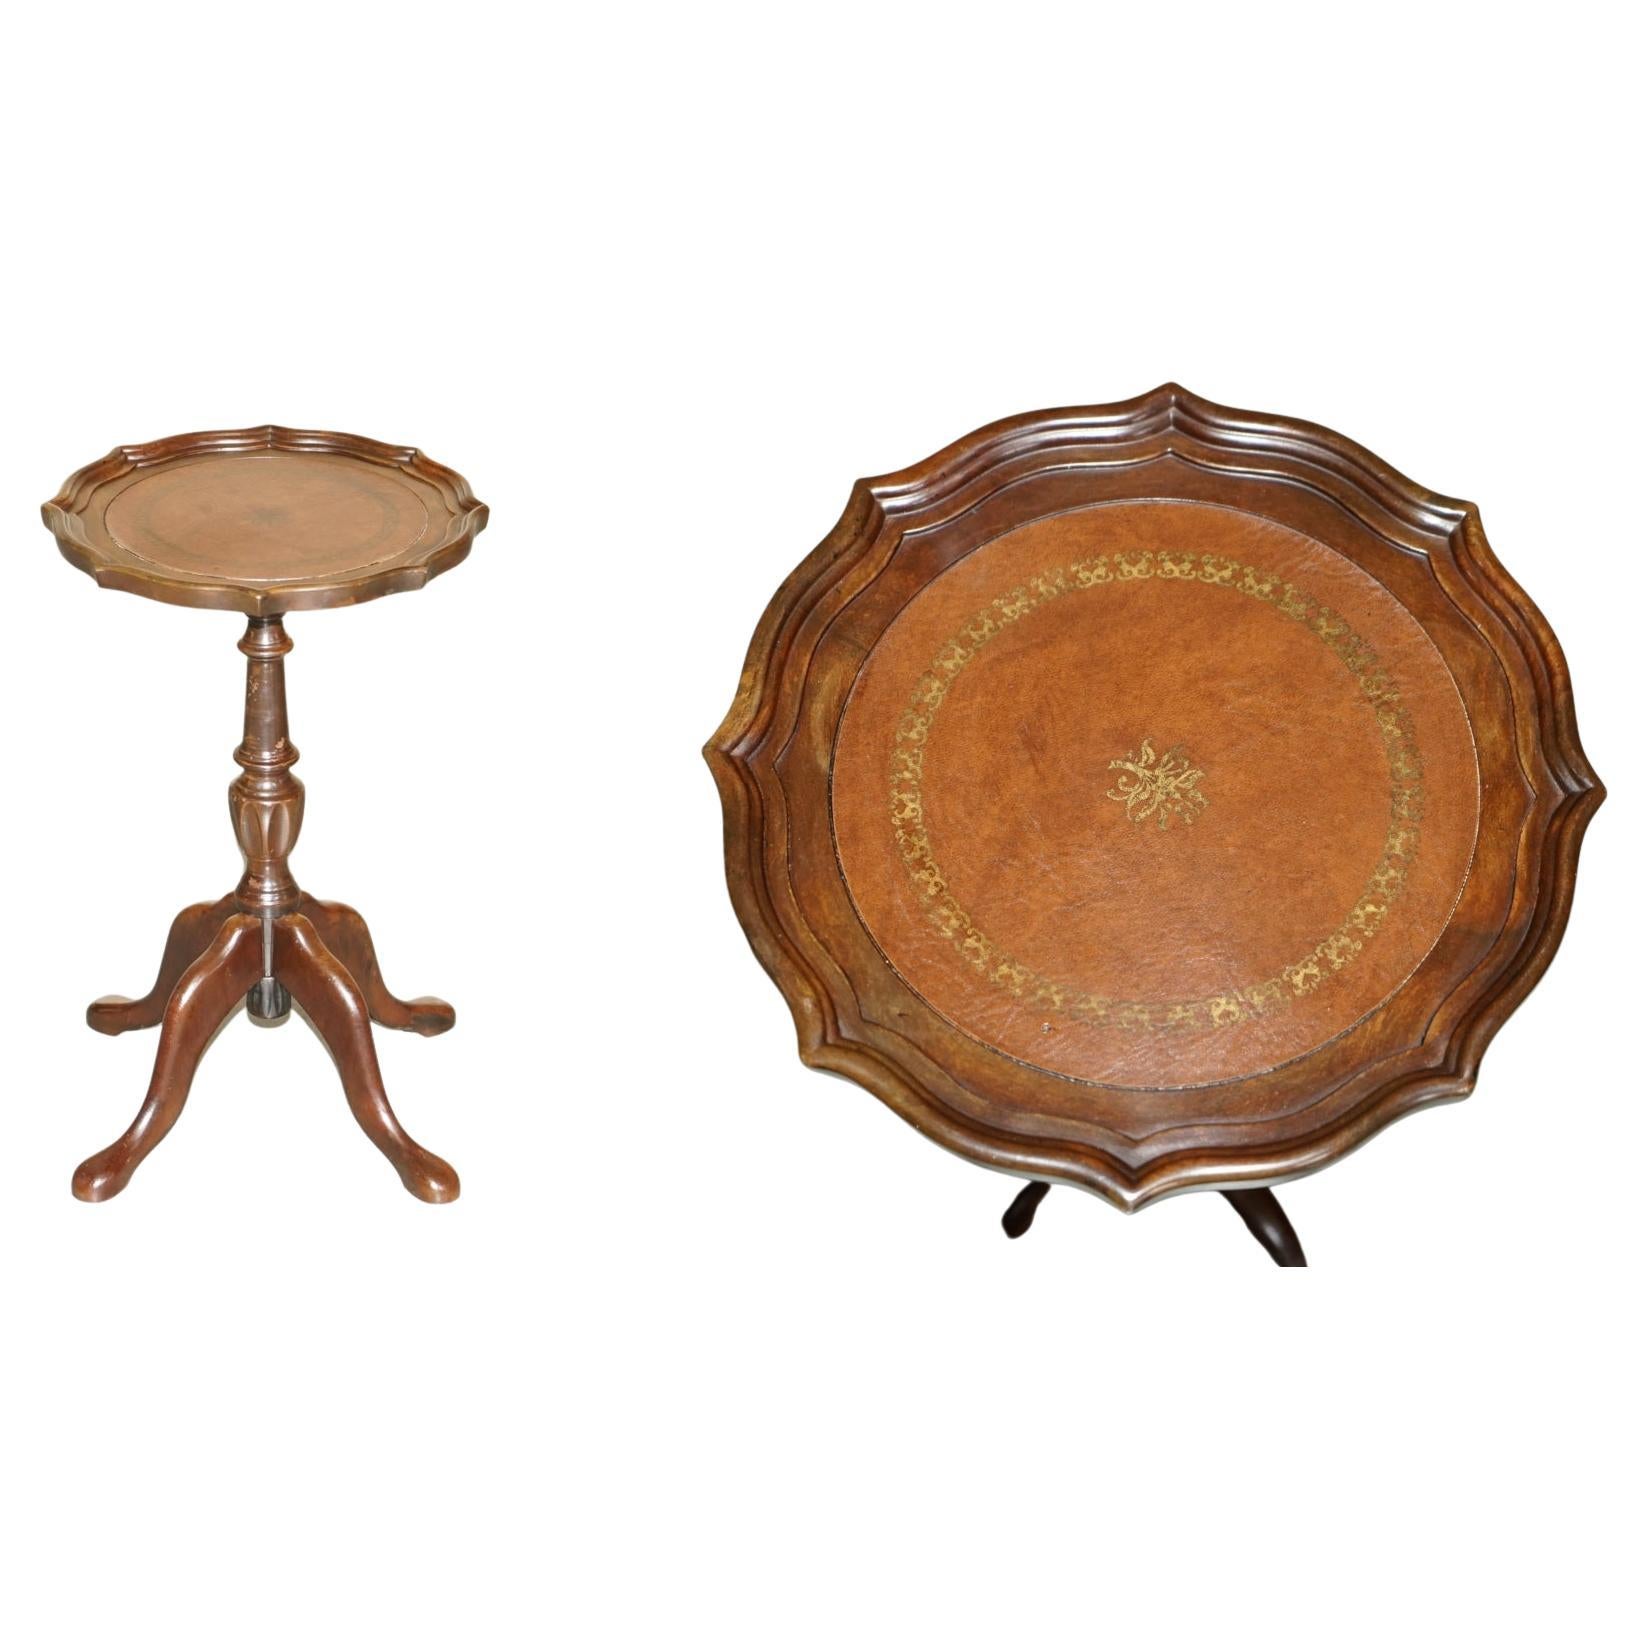 Table à vin à 4 pieds, en bois dur, bordée de croûte de tarte, en cuir brun, tripode, lampe d'extrémité.